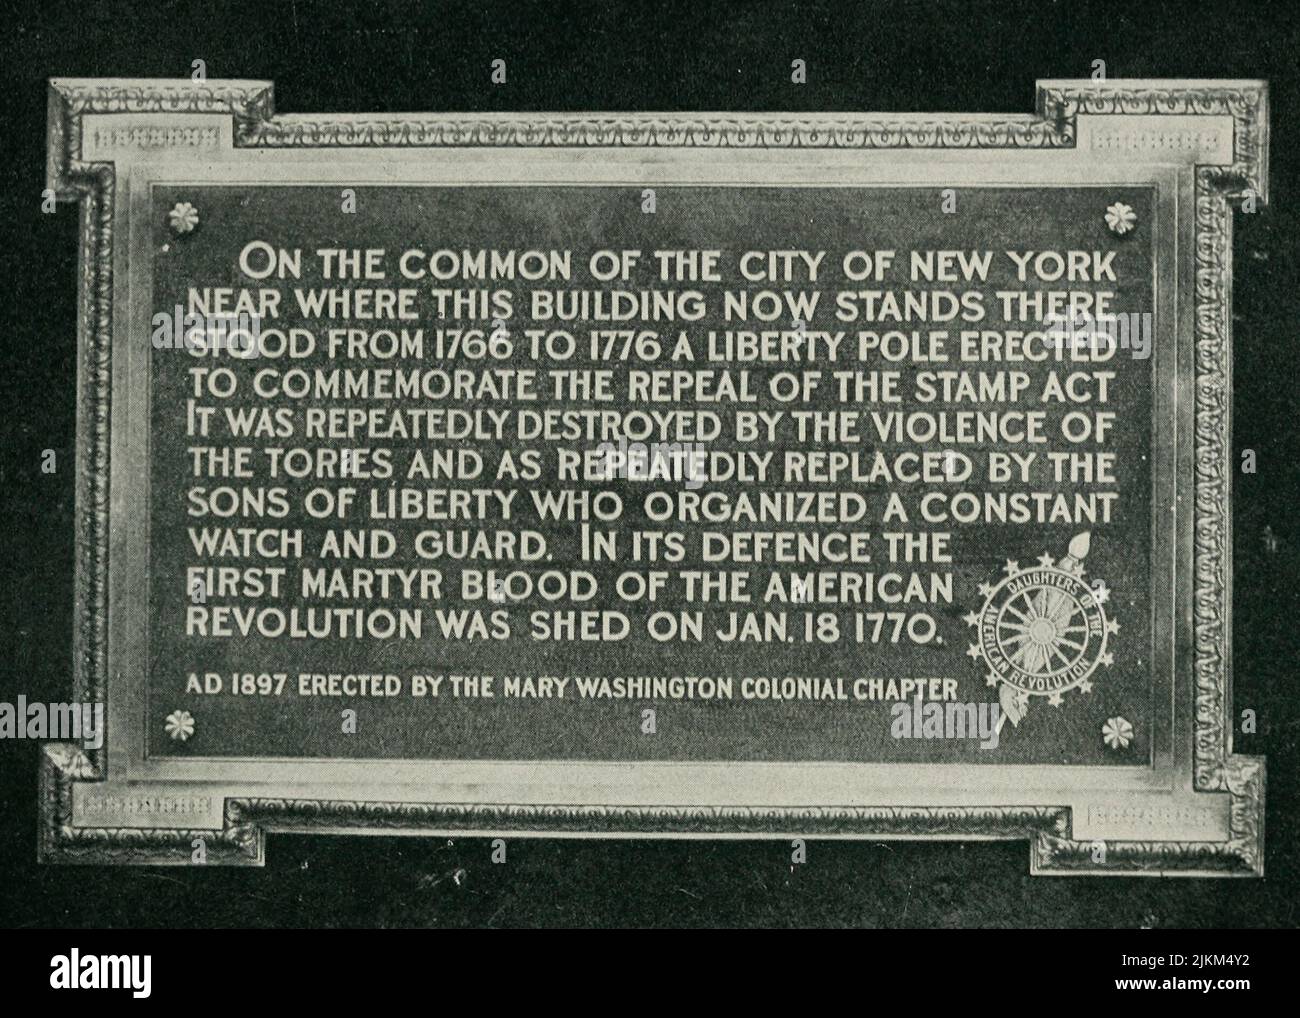 El Polo de la Libertad 1766-1776 - hermosa tablilla de bronce erigida en el antiguo edificio de la Oficina de Correos en 1897, donde originalmente estaba antes de la Declaración de Independencia. Foto de stock